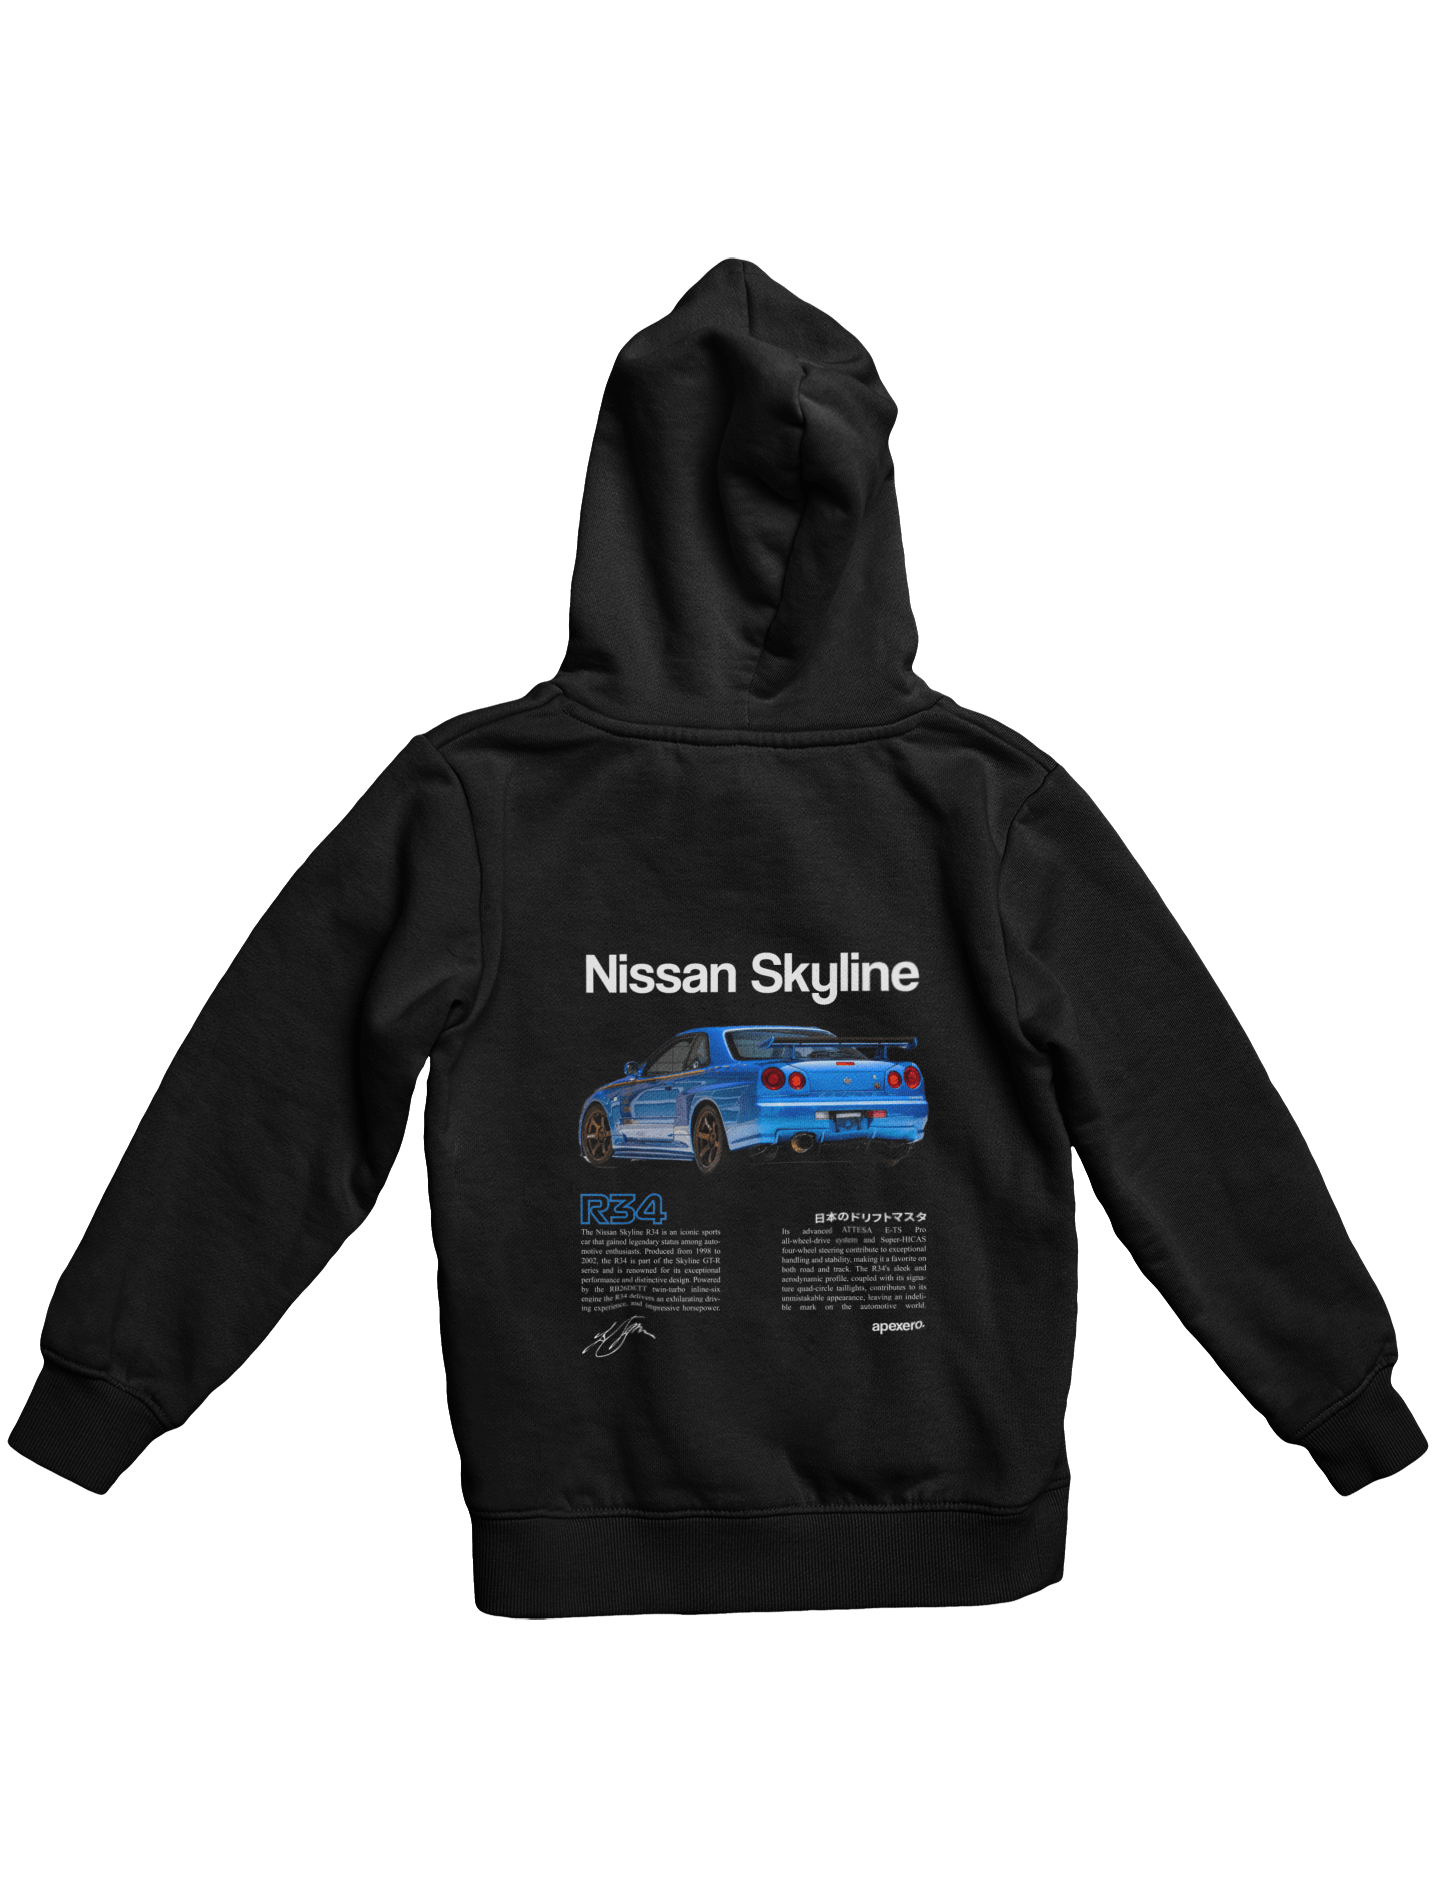 Nissan Skyline R34 Hoodie Black